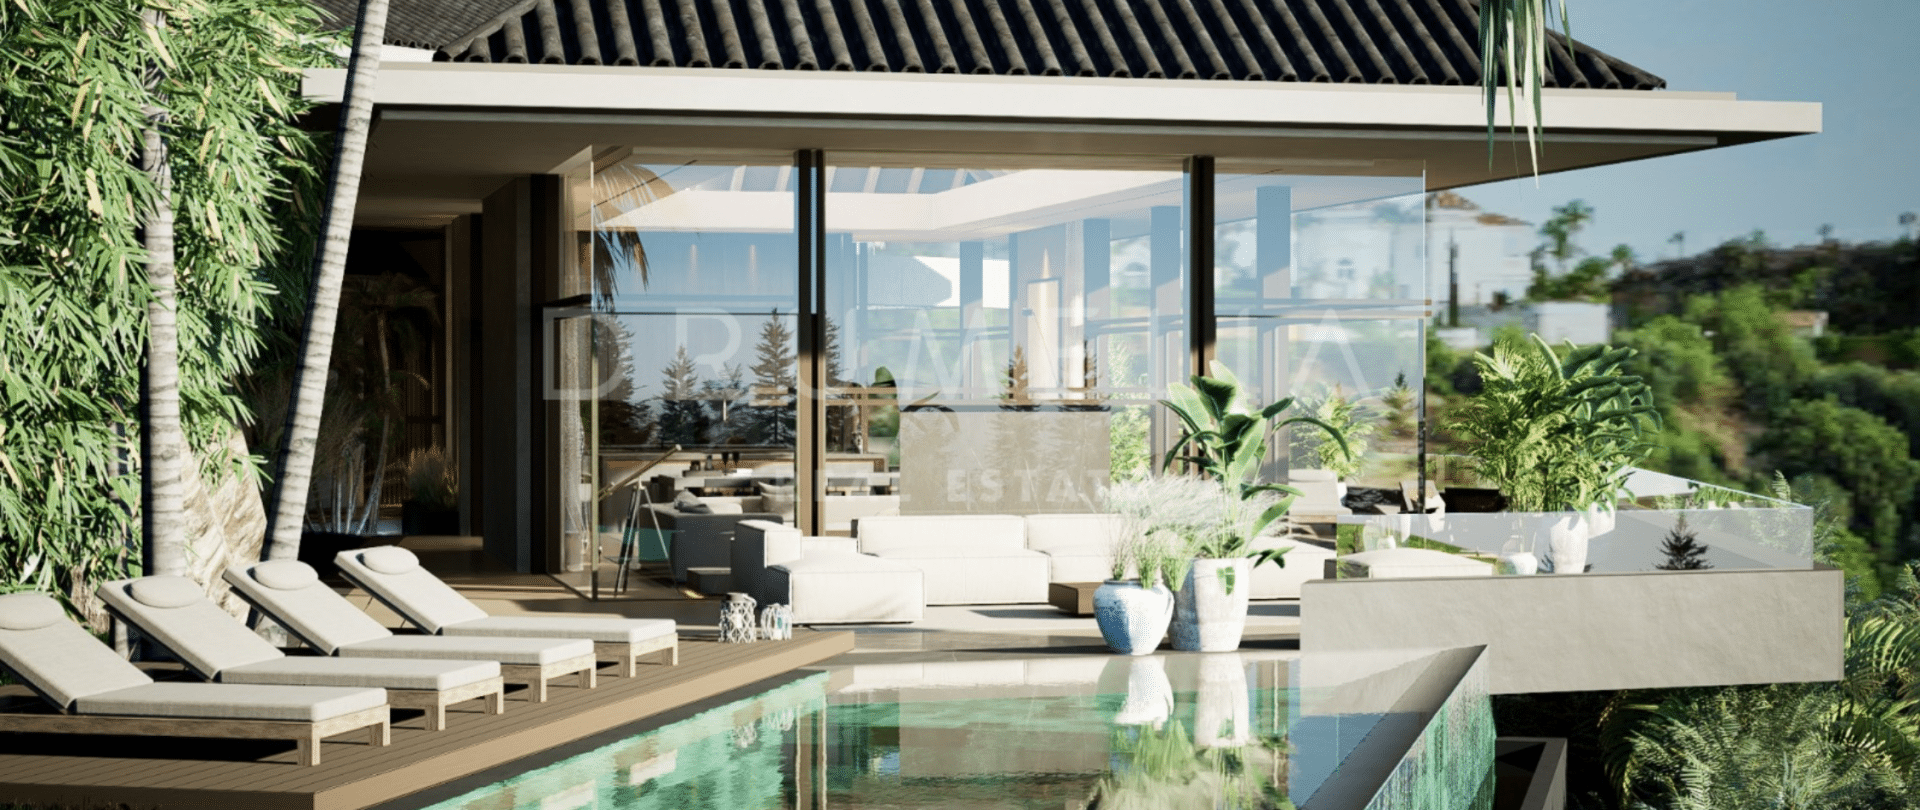 Brand-new extraordinary modern Balinese-themed designer villa in Puerto del Almendro, Benahavis.